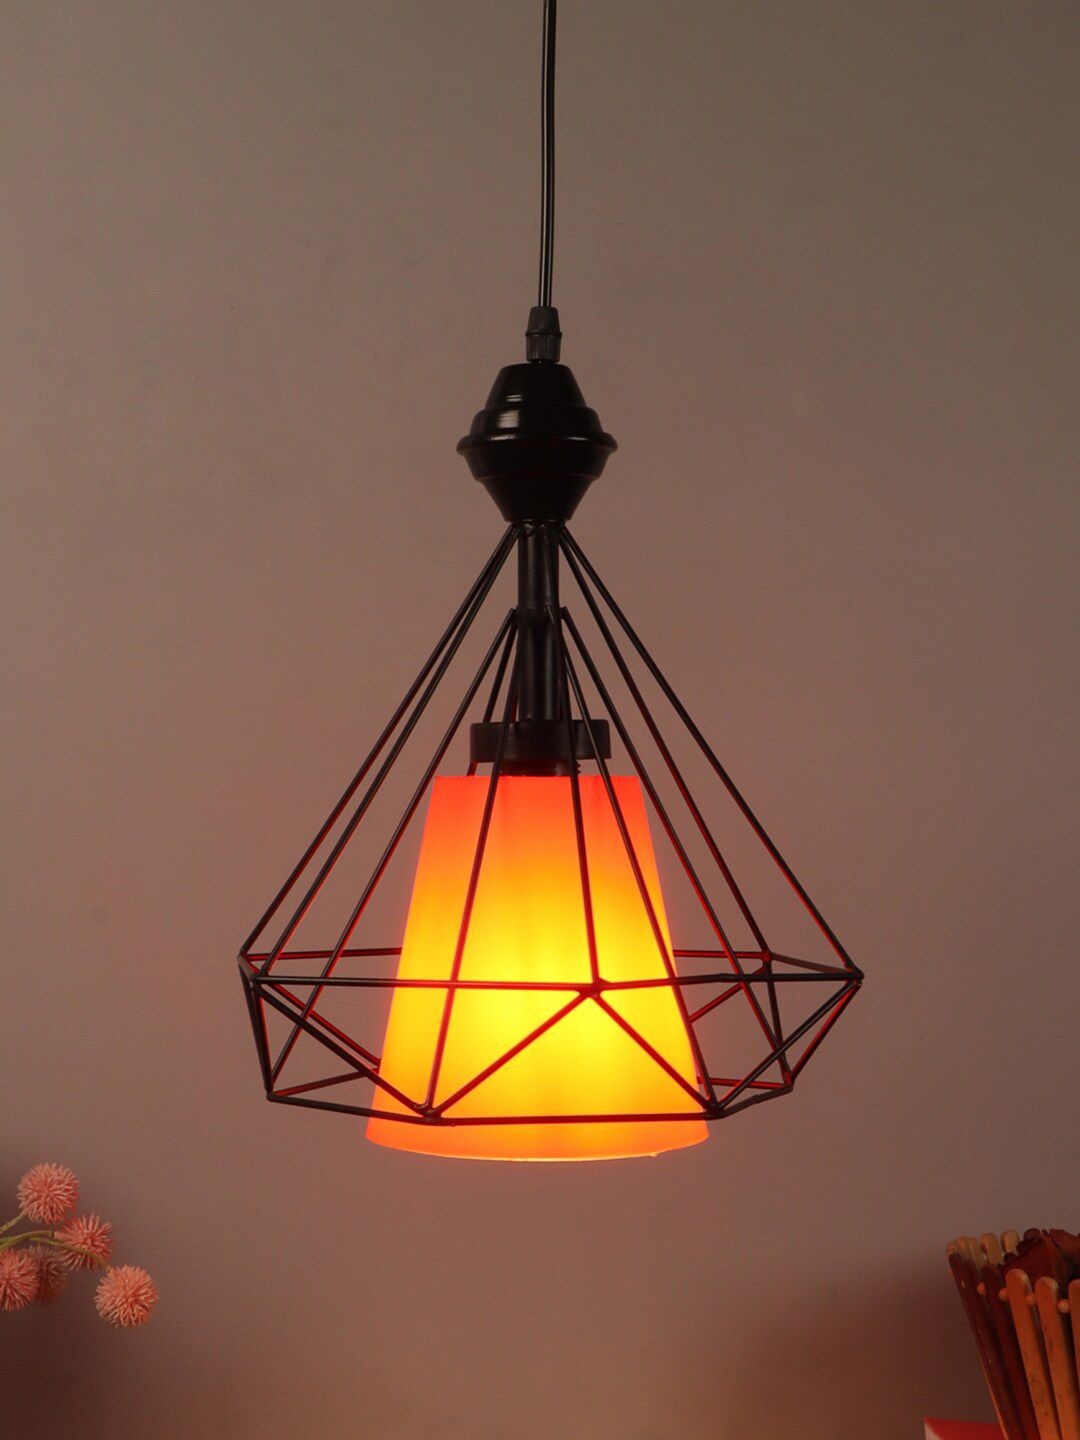 foziq Black Solid Metal Ceiling Pendant Lamp Price in India